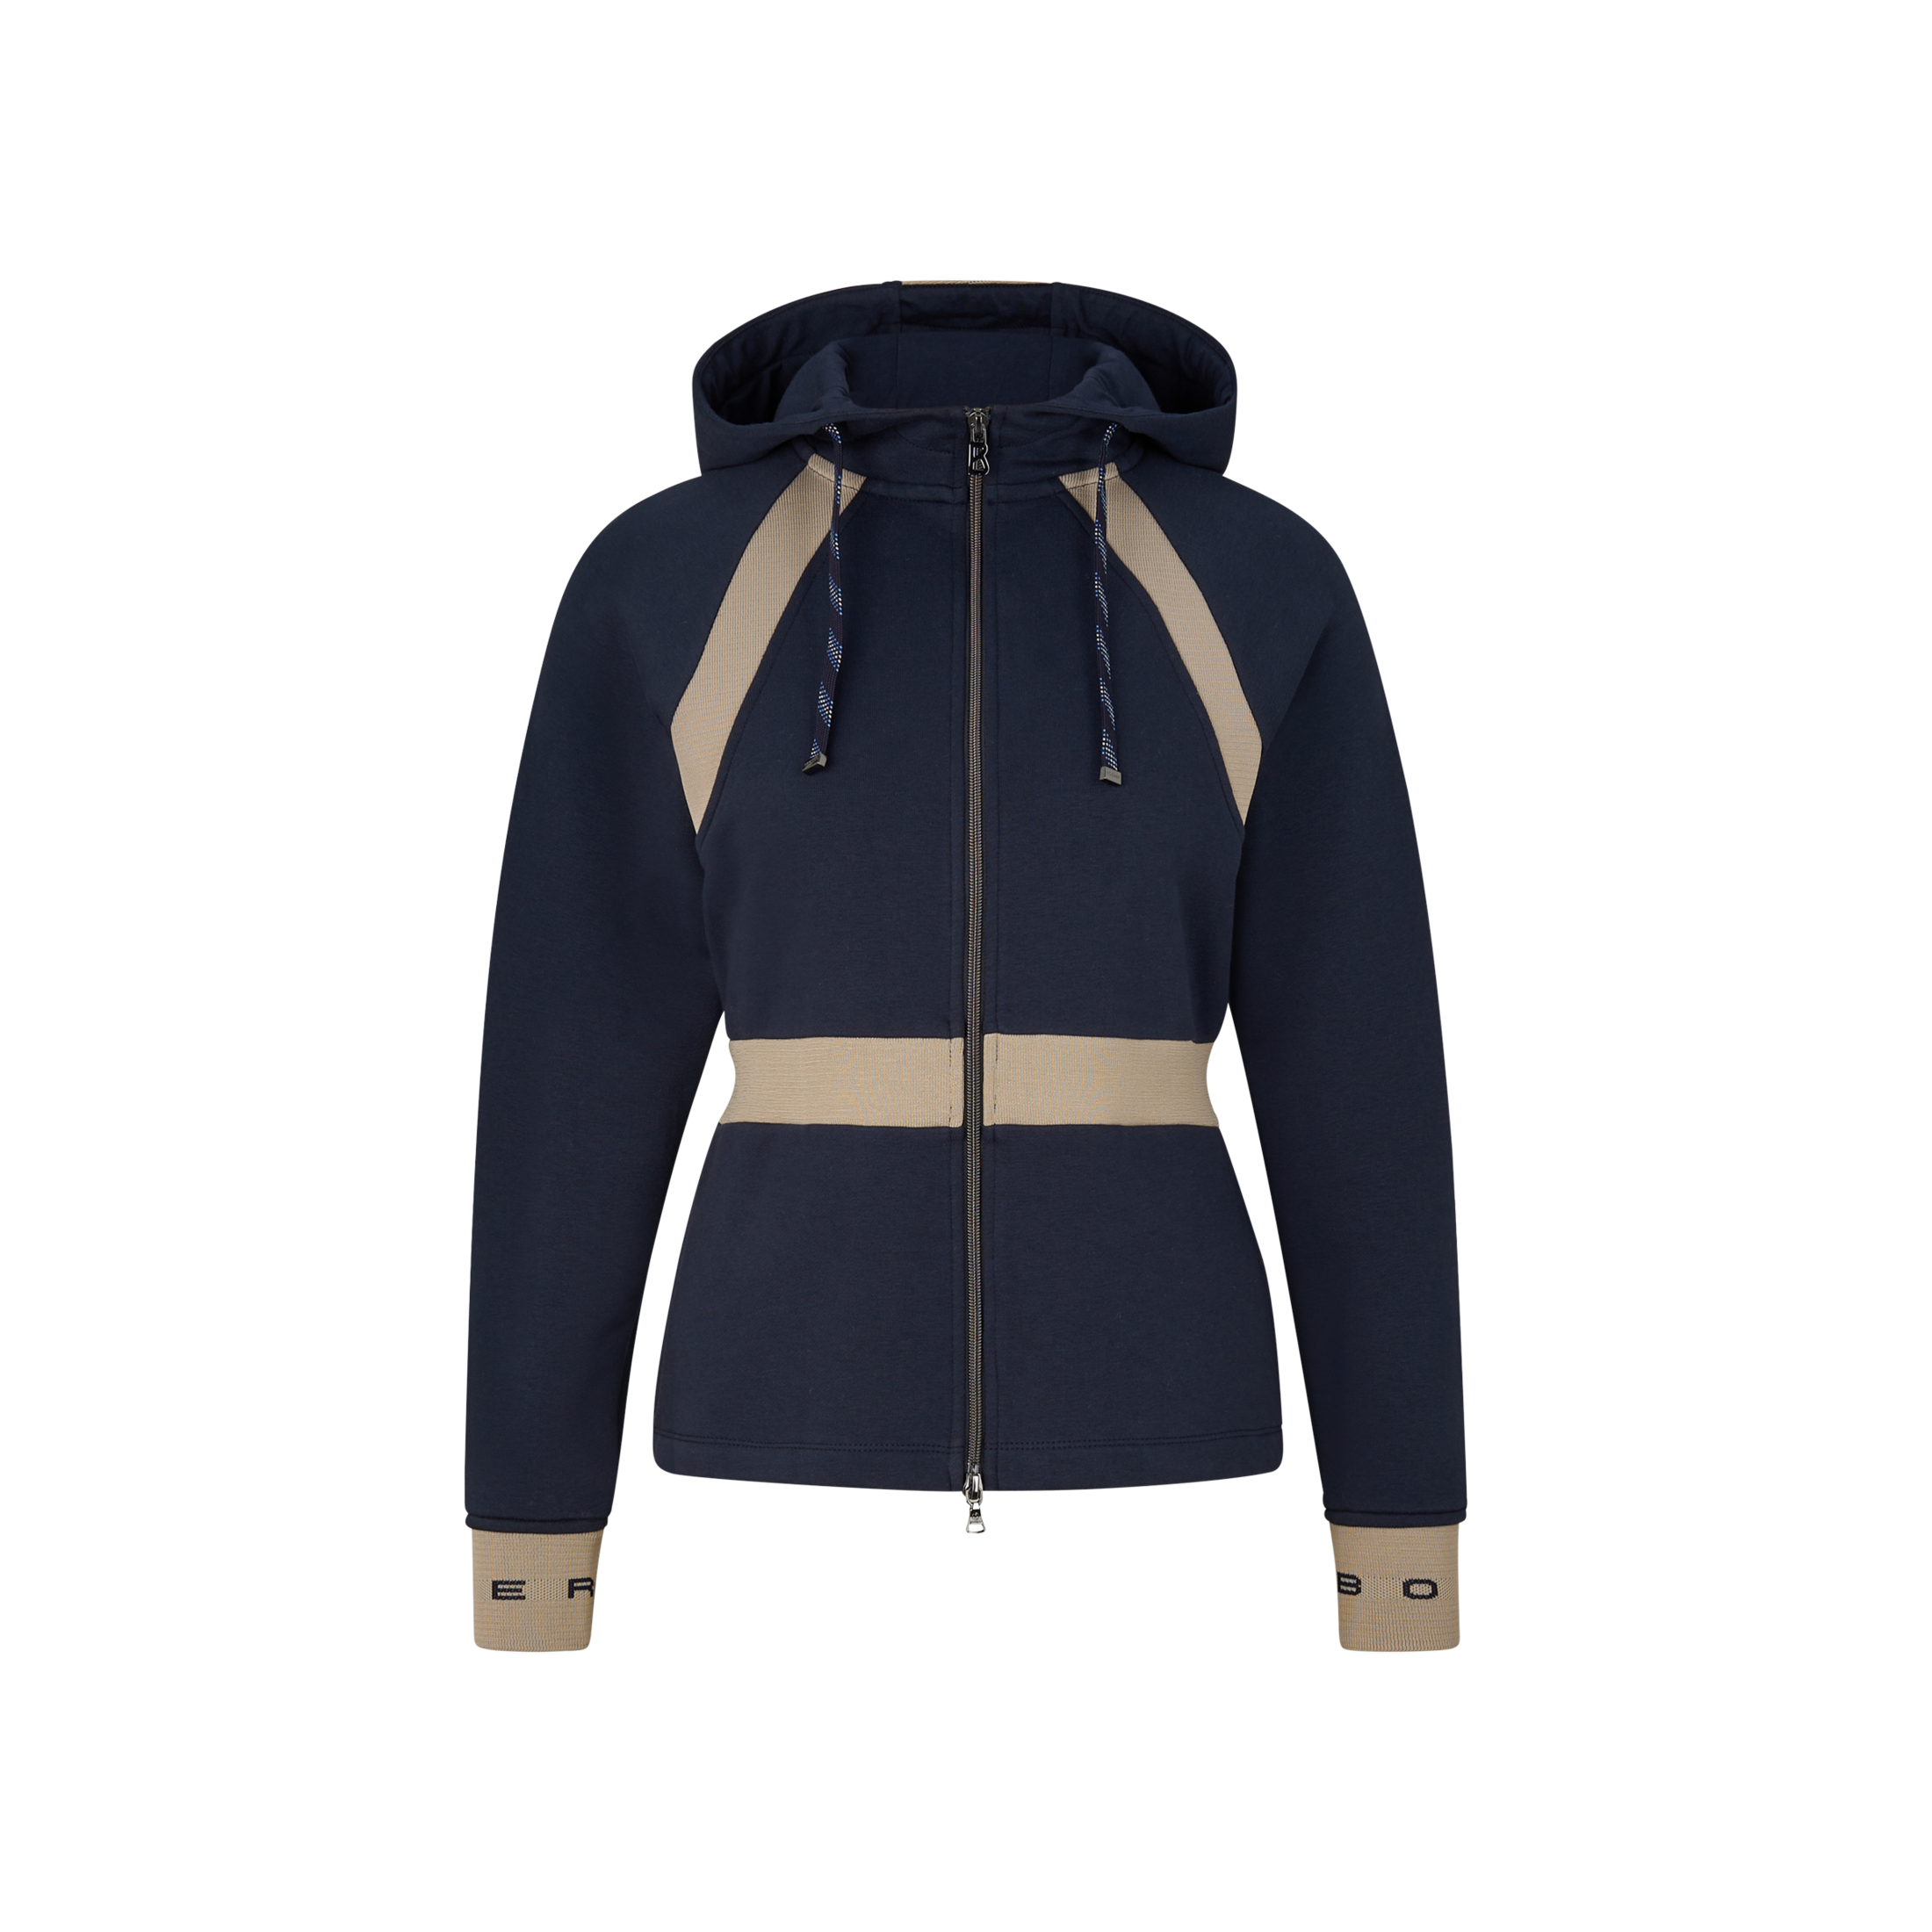 BOGNER Cadis sweatshirt jacket for women - Navy blue/Beige - 16/3XL product